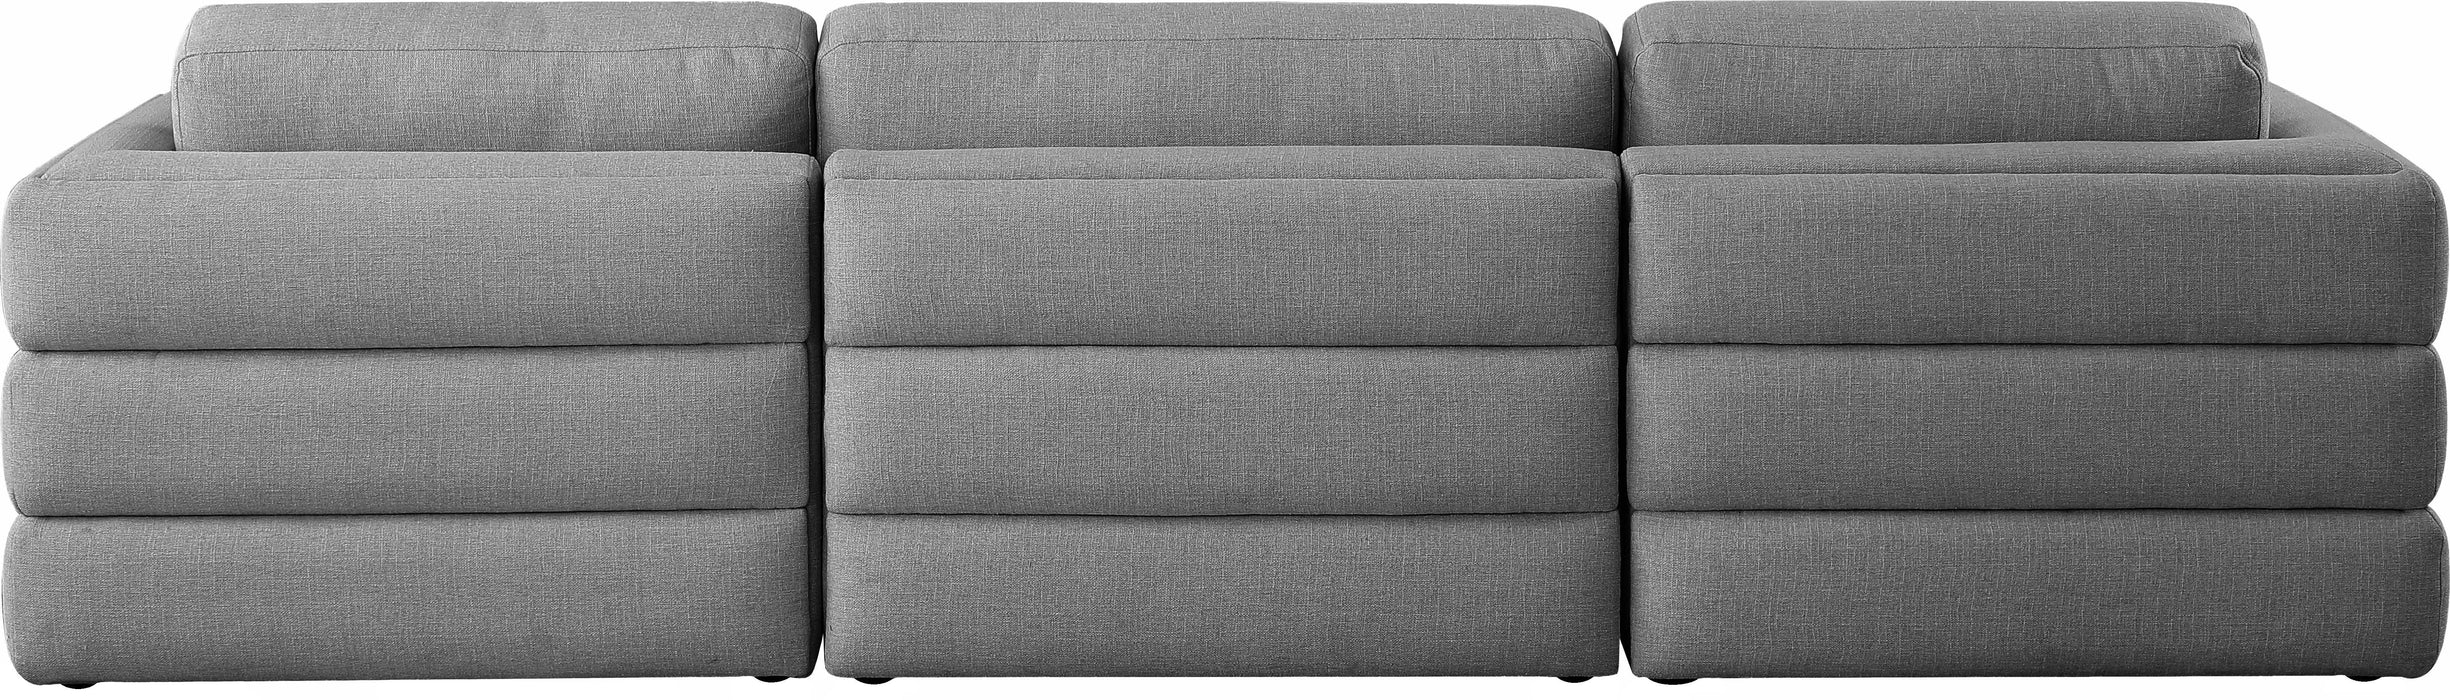 Beckham - Modular Sofa 3 Seats - Gray - Fabric